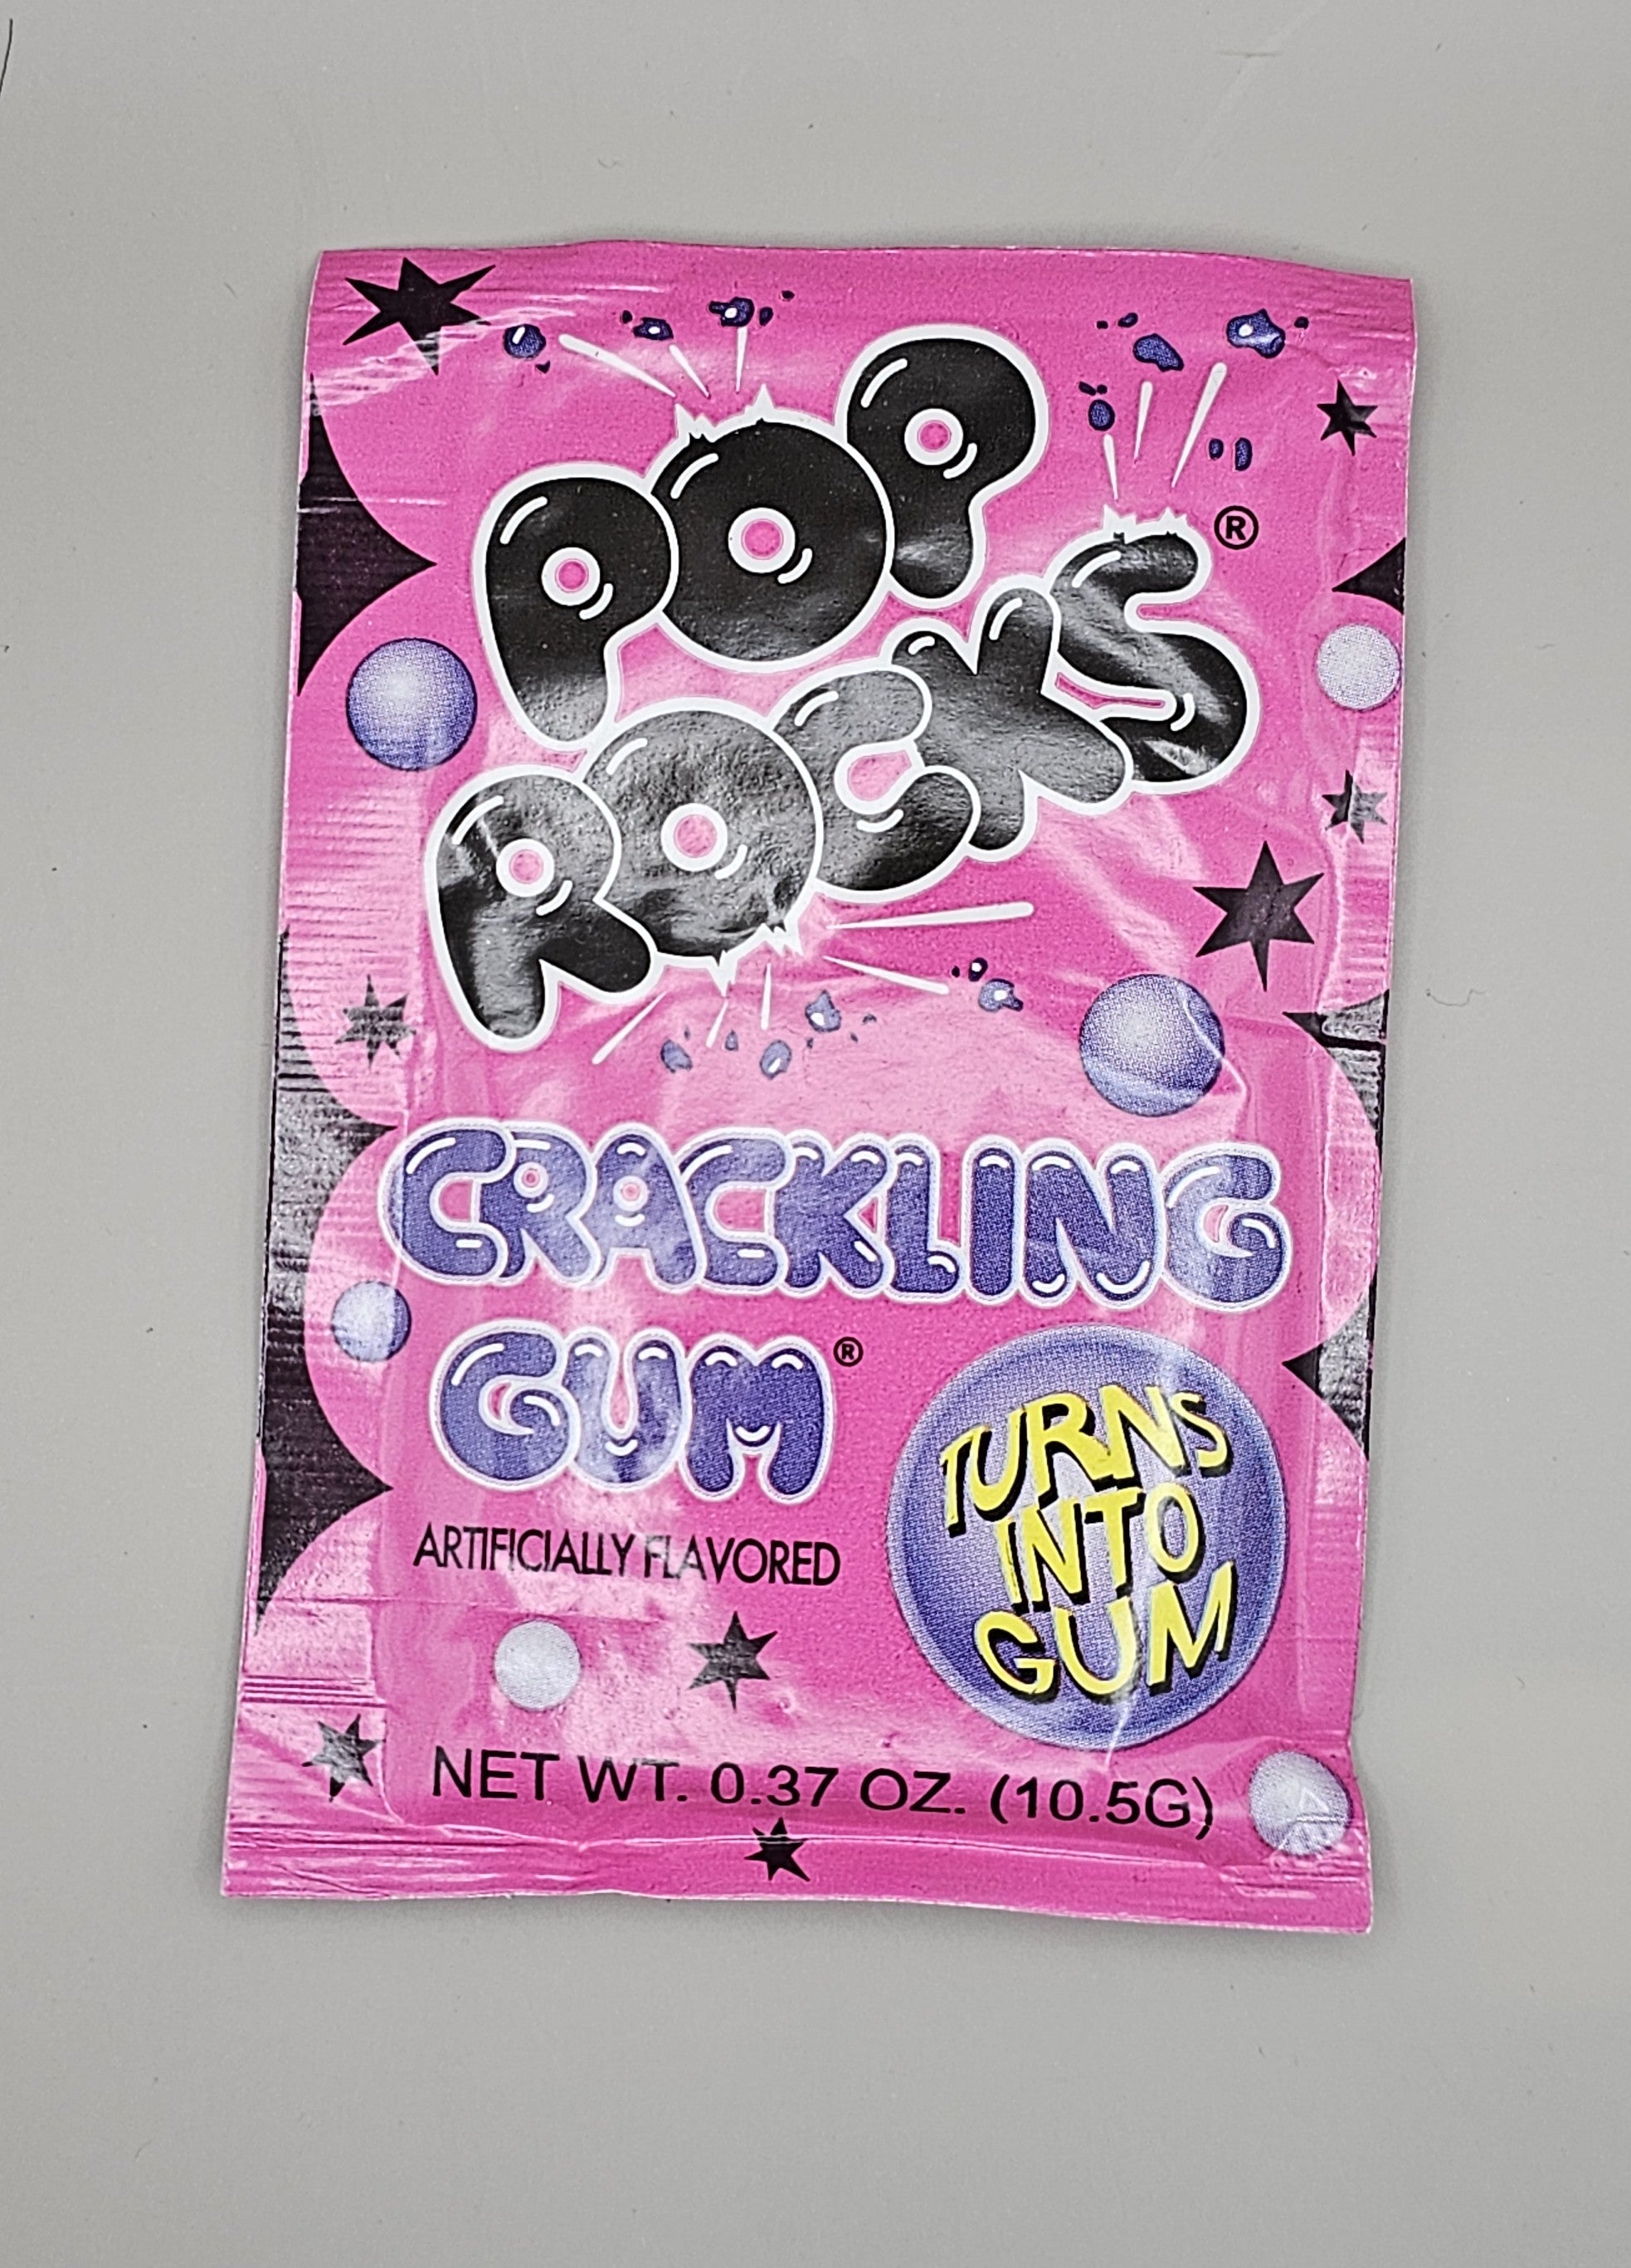 Bubble gum pop rocks.